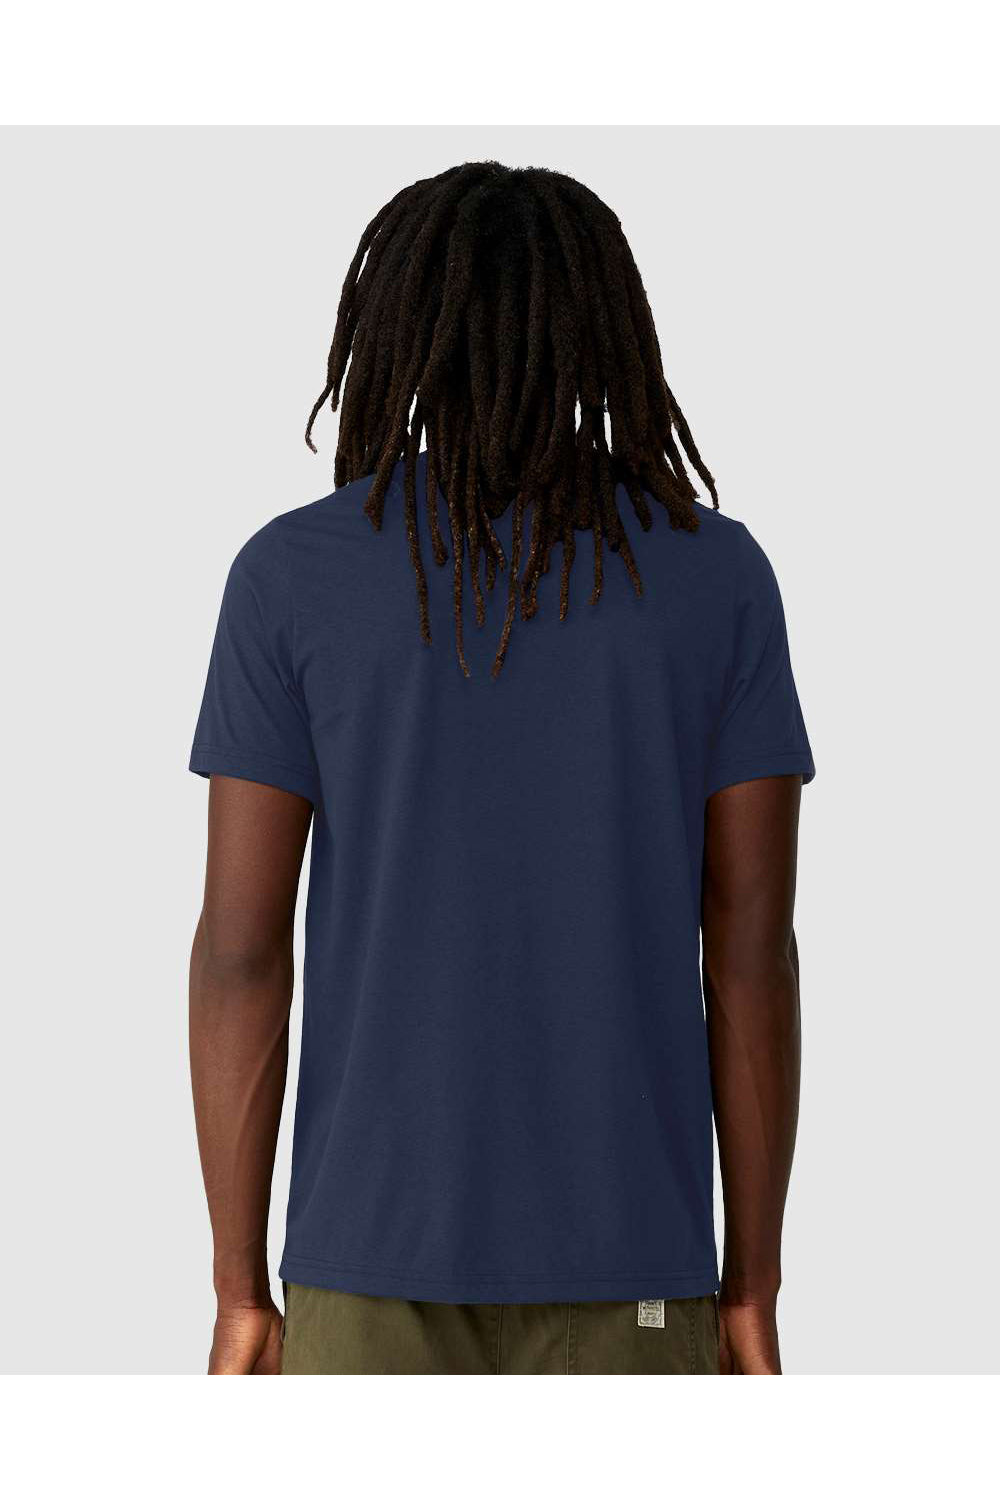 Bella + Canvas 3001ECO Mens EcoMax Short Sleeve Crewneck T-Shirt Navy Blue Model Back